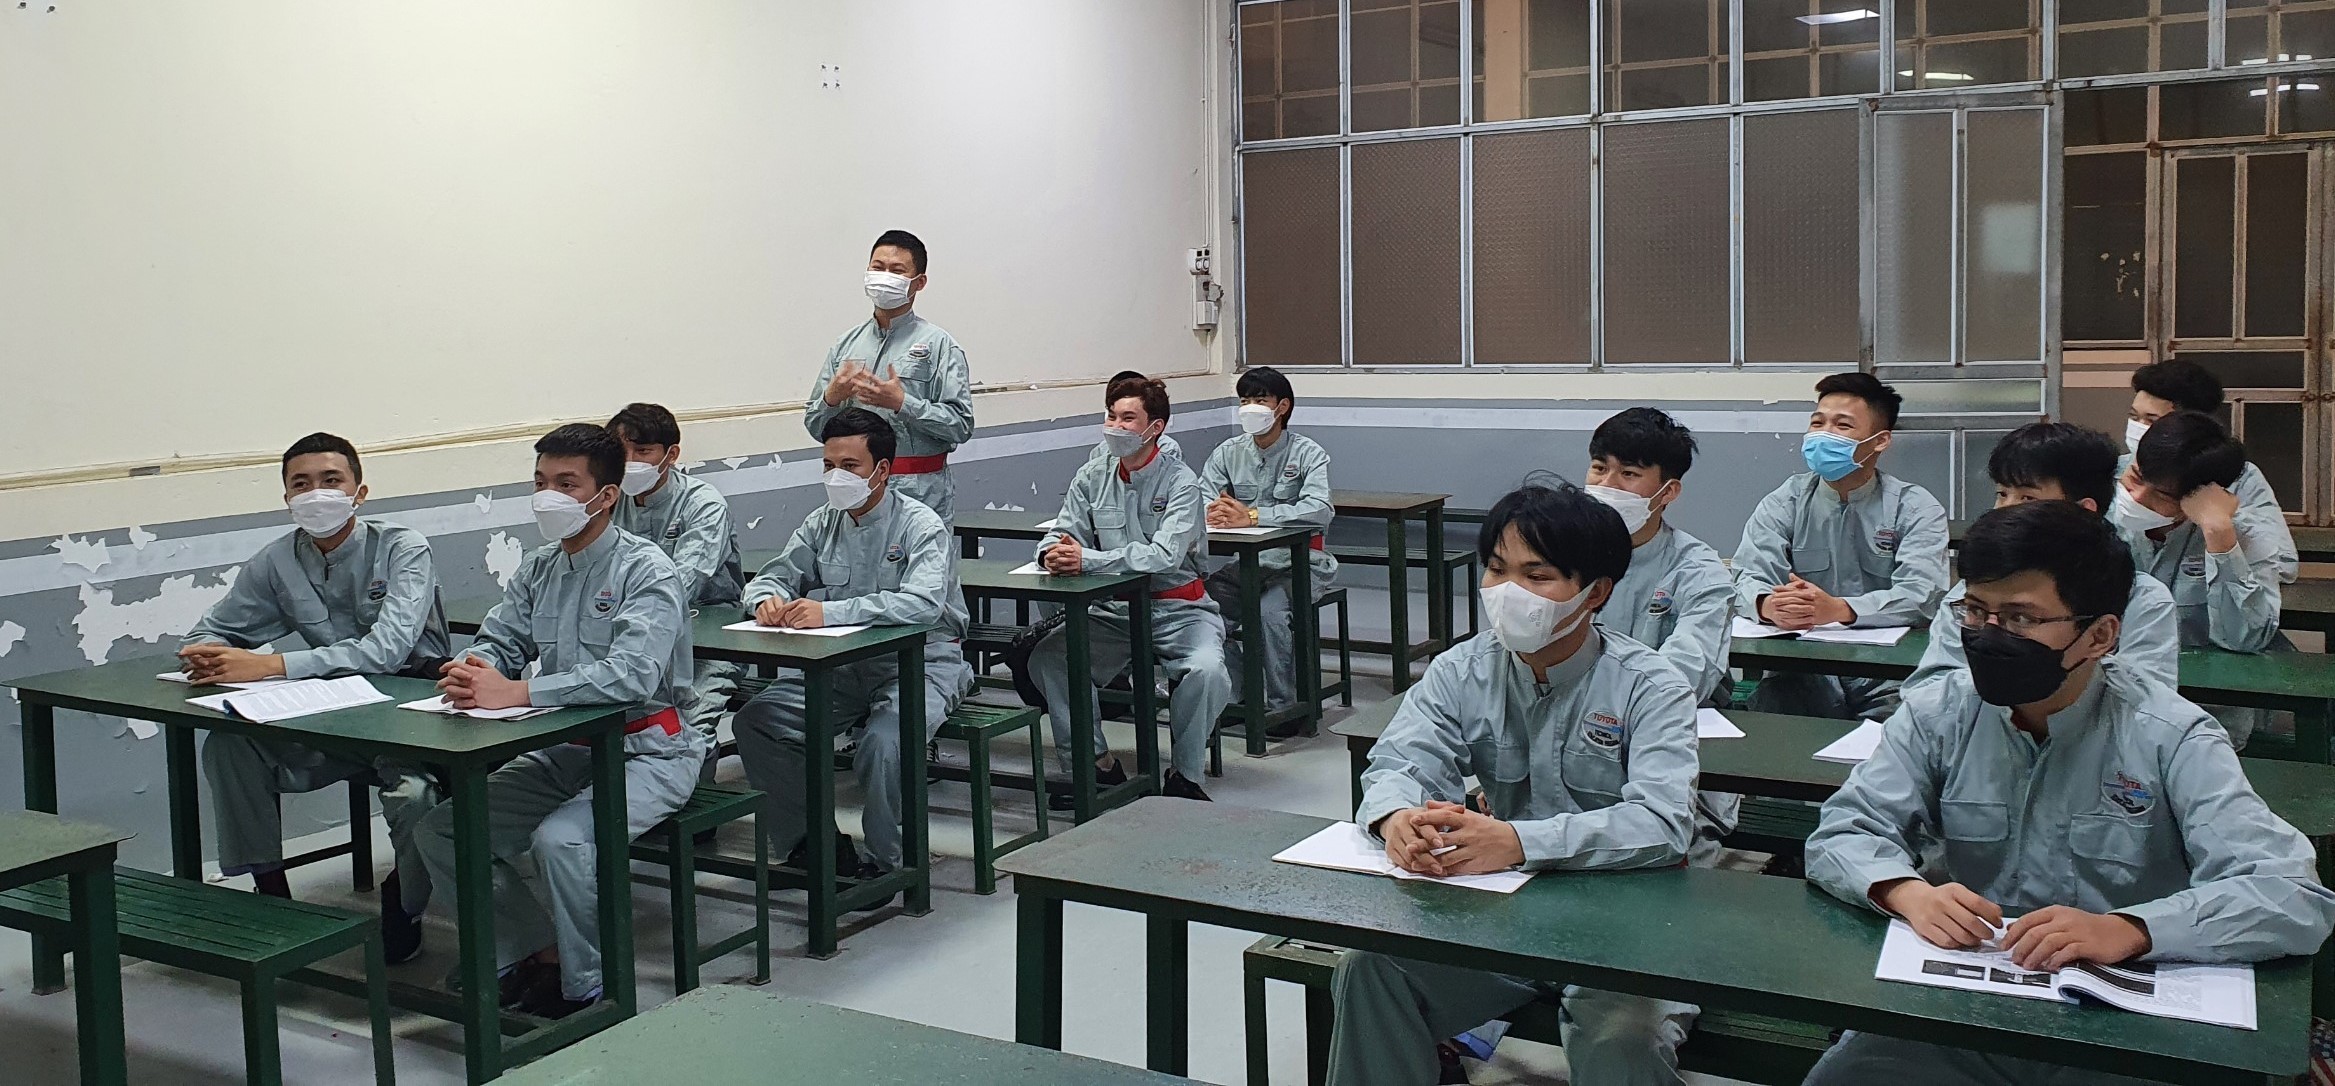 Quỹ Toyota Việt Nam và Trường Cao đẳng Cơ điện Hà Nội tuyển sinh khóa 5 Học bổng dạy nghề Toyota